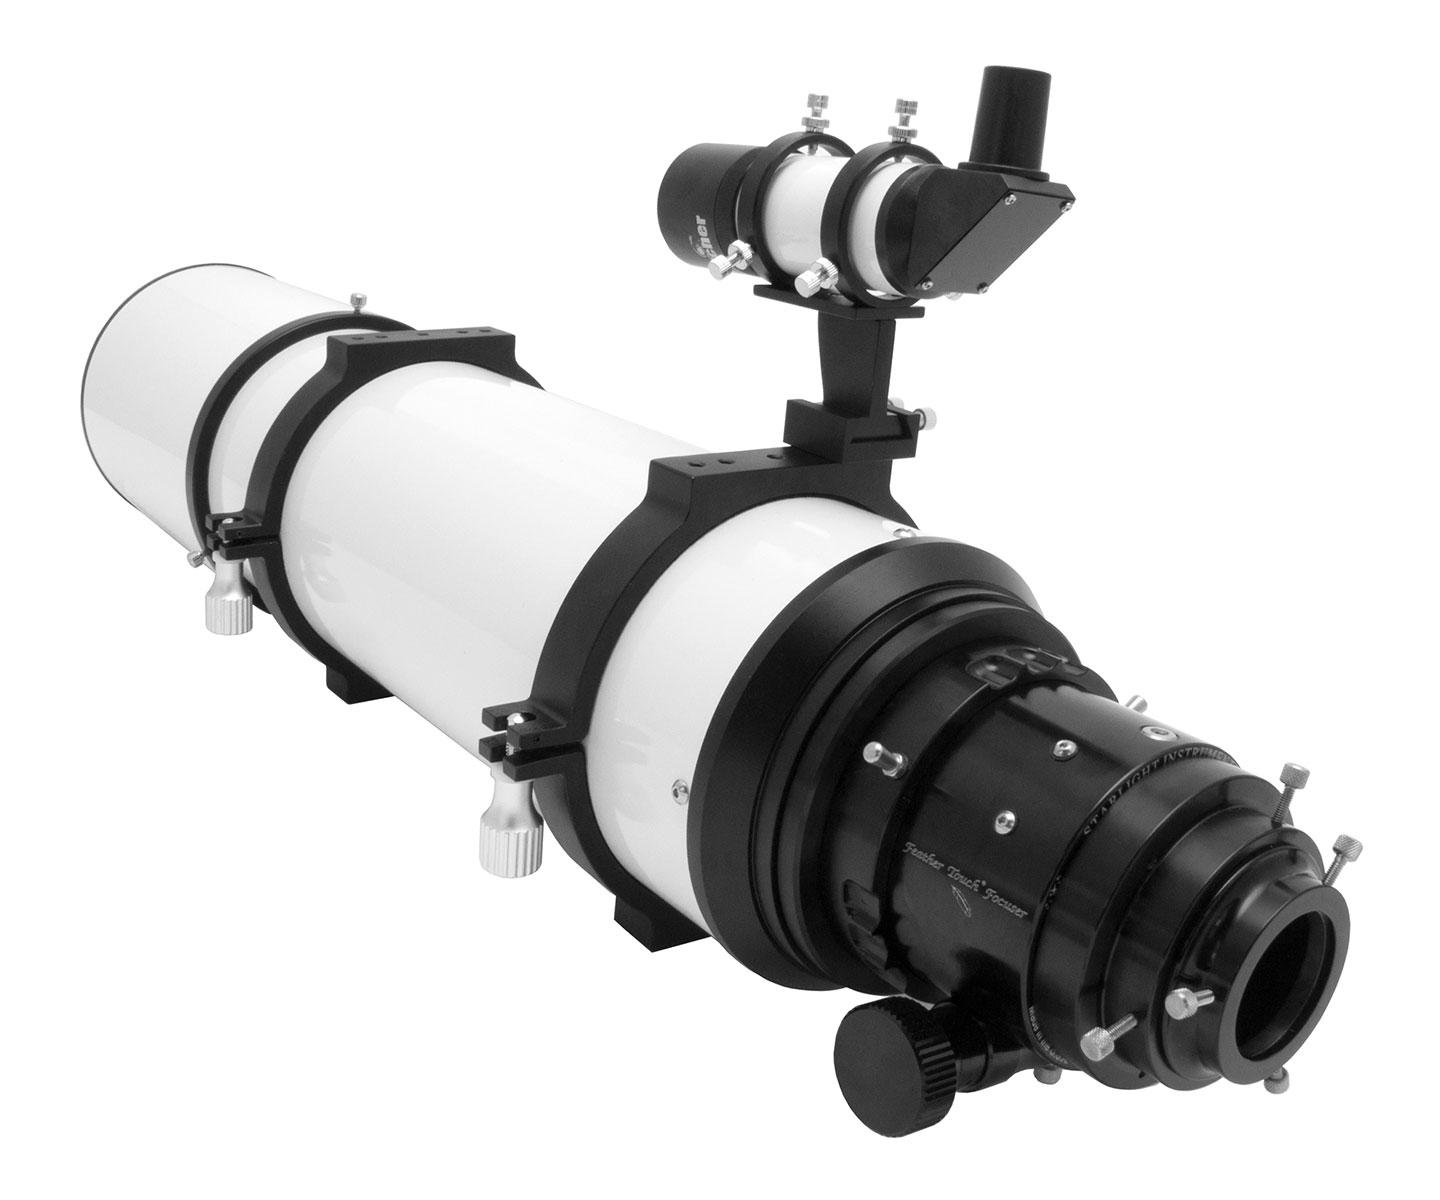  Tripletto Super APO FPL-53 TS Optics 150/1000mm f/6.6 con focheggiatore Feather Touch da 3.5" 